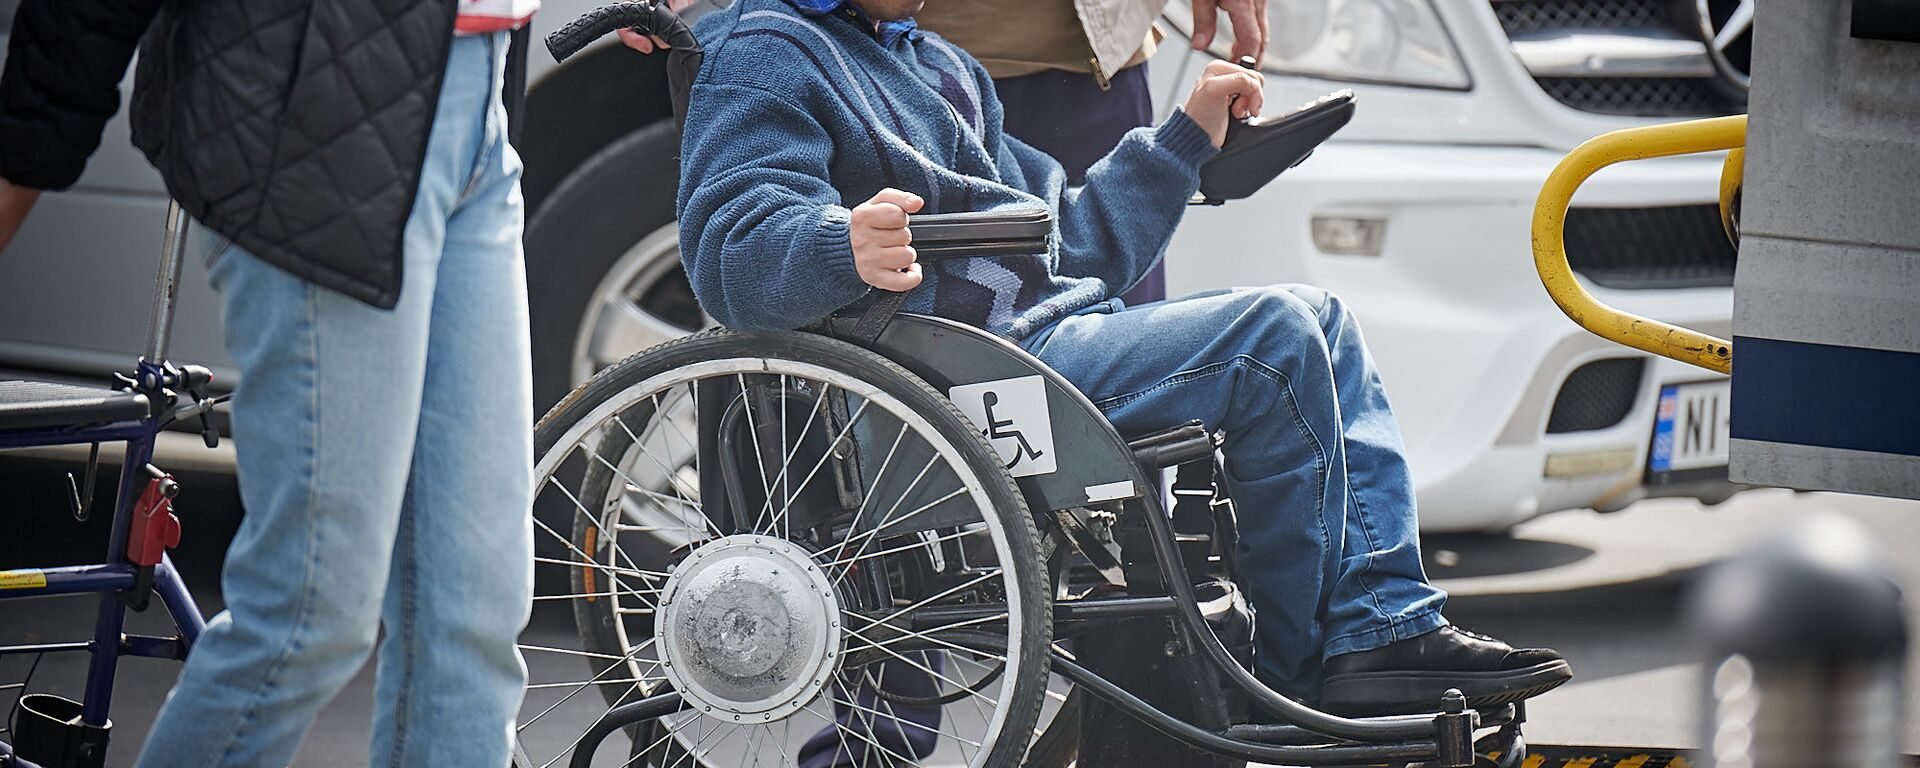 Человек с ОВЗ на инвалидной коляске - Sputnik Грузия, 1920, 06.01.2021